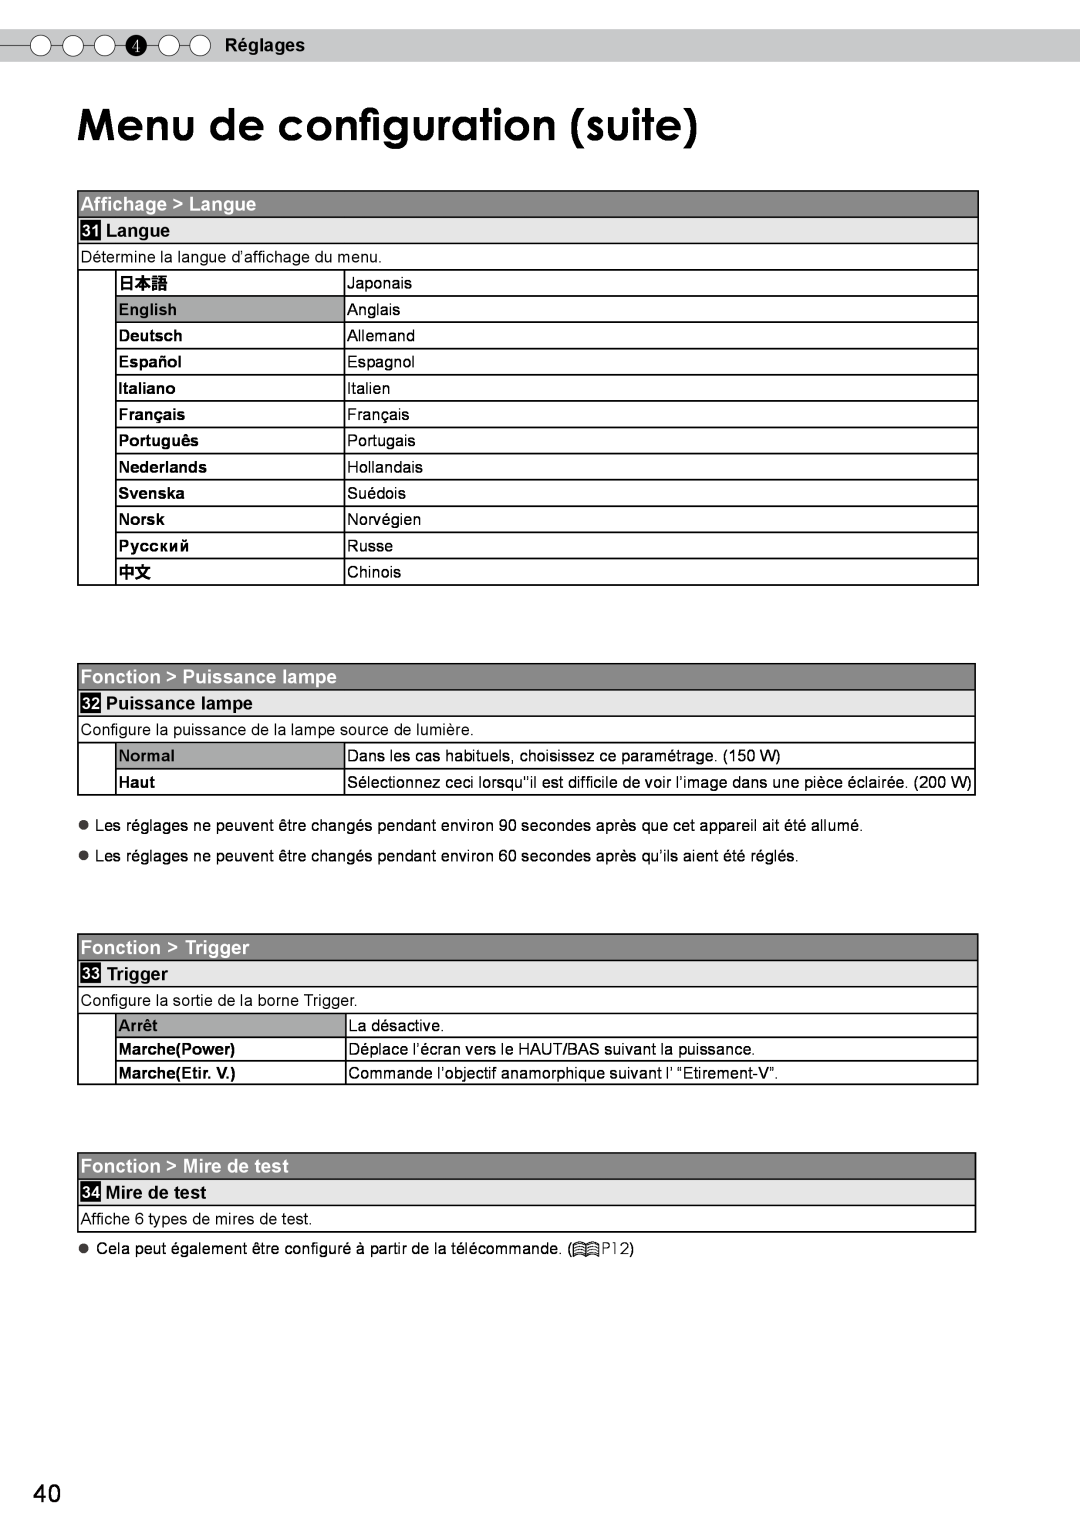 JVC DLA-RS10 manual Menu de configuration suite, Affichage Langue, Fonction Puissance lampe, Fonction Trigger, 4 Réglages 